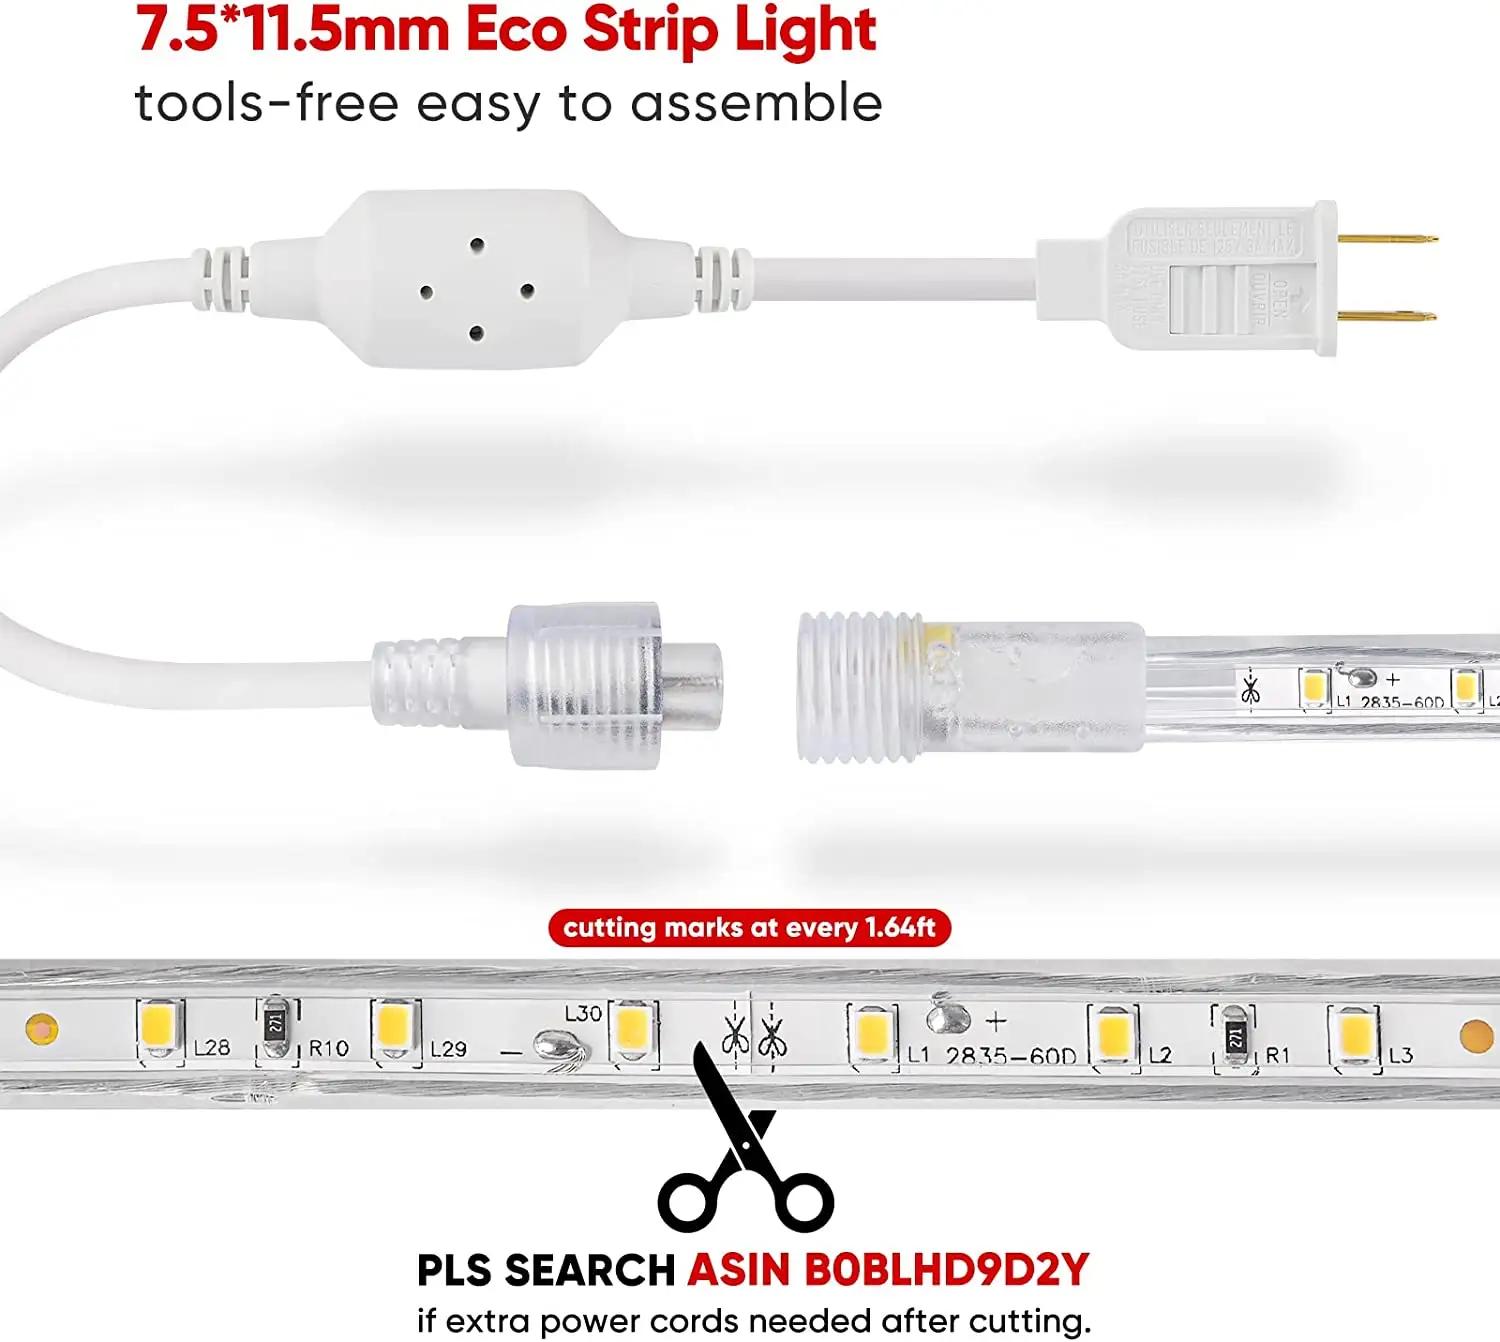 LED Strips Light ETL Listed Flexible Cuttable LED Light IP65 Waterproof LED Light Strips